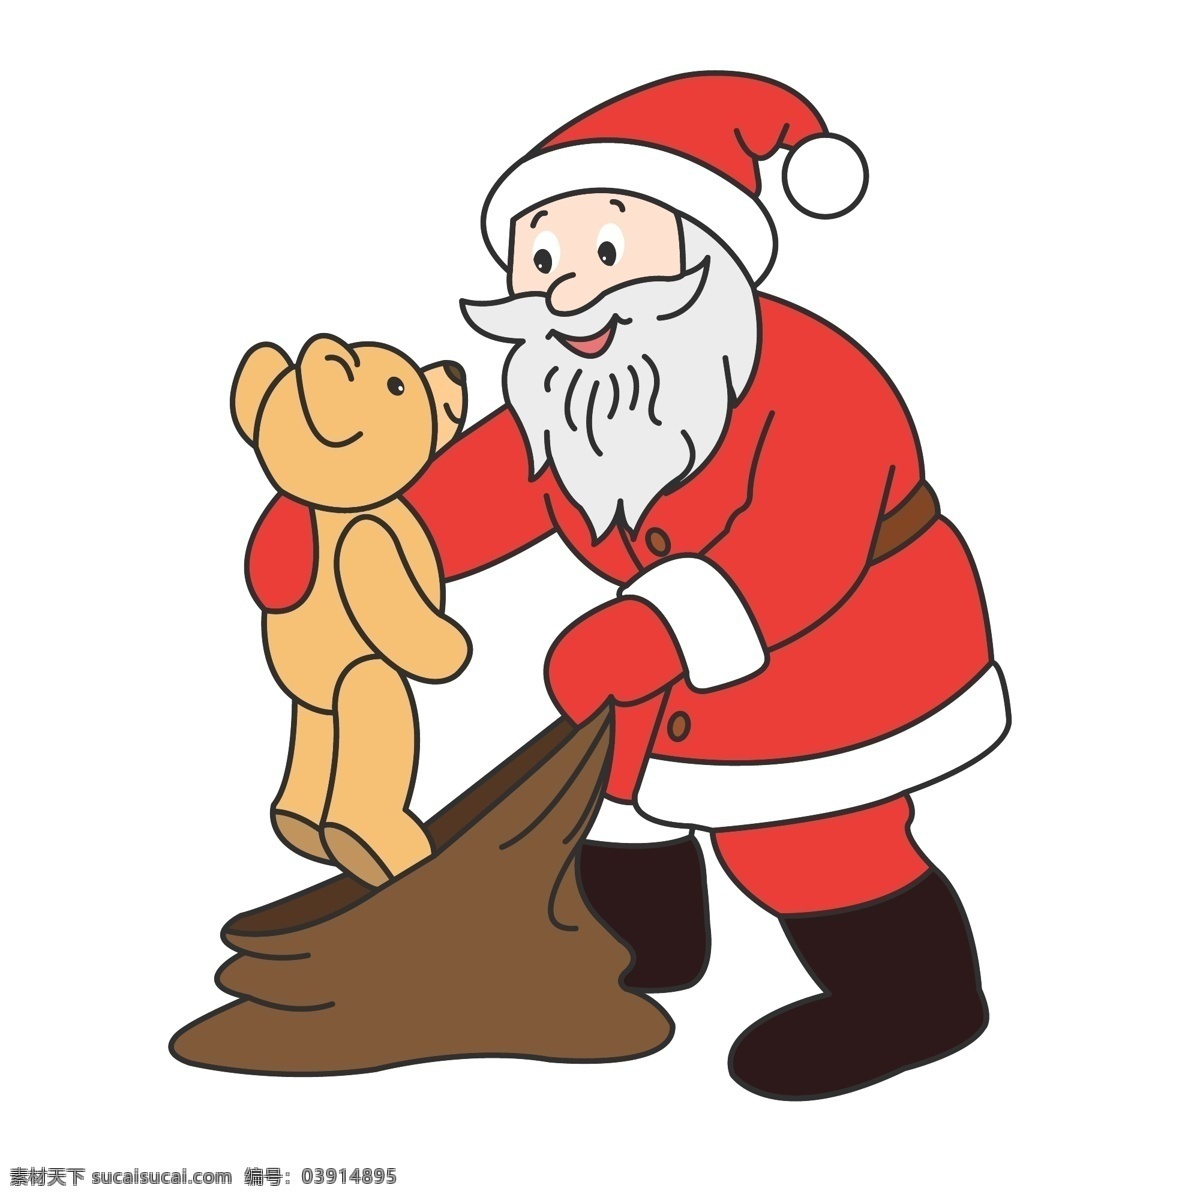 手绘 矢量 圣诞节 圣诞老人 可爱 礼物 卡通人物 圣诞夜 平安 小熊 祝福